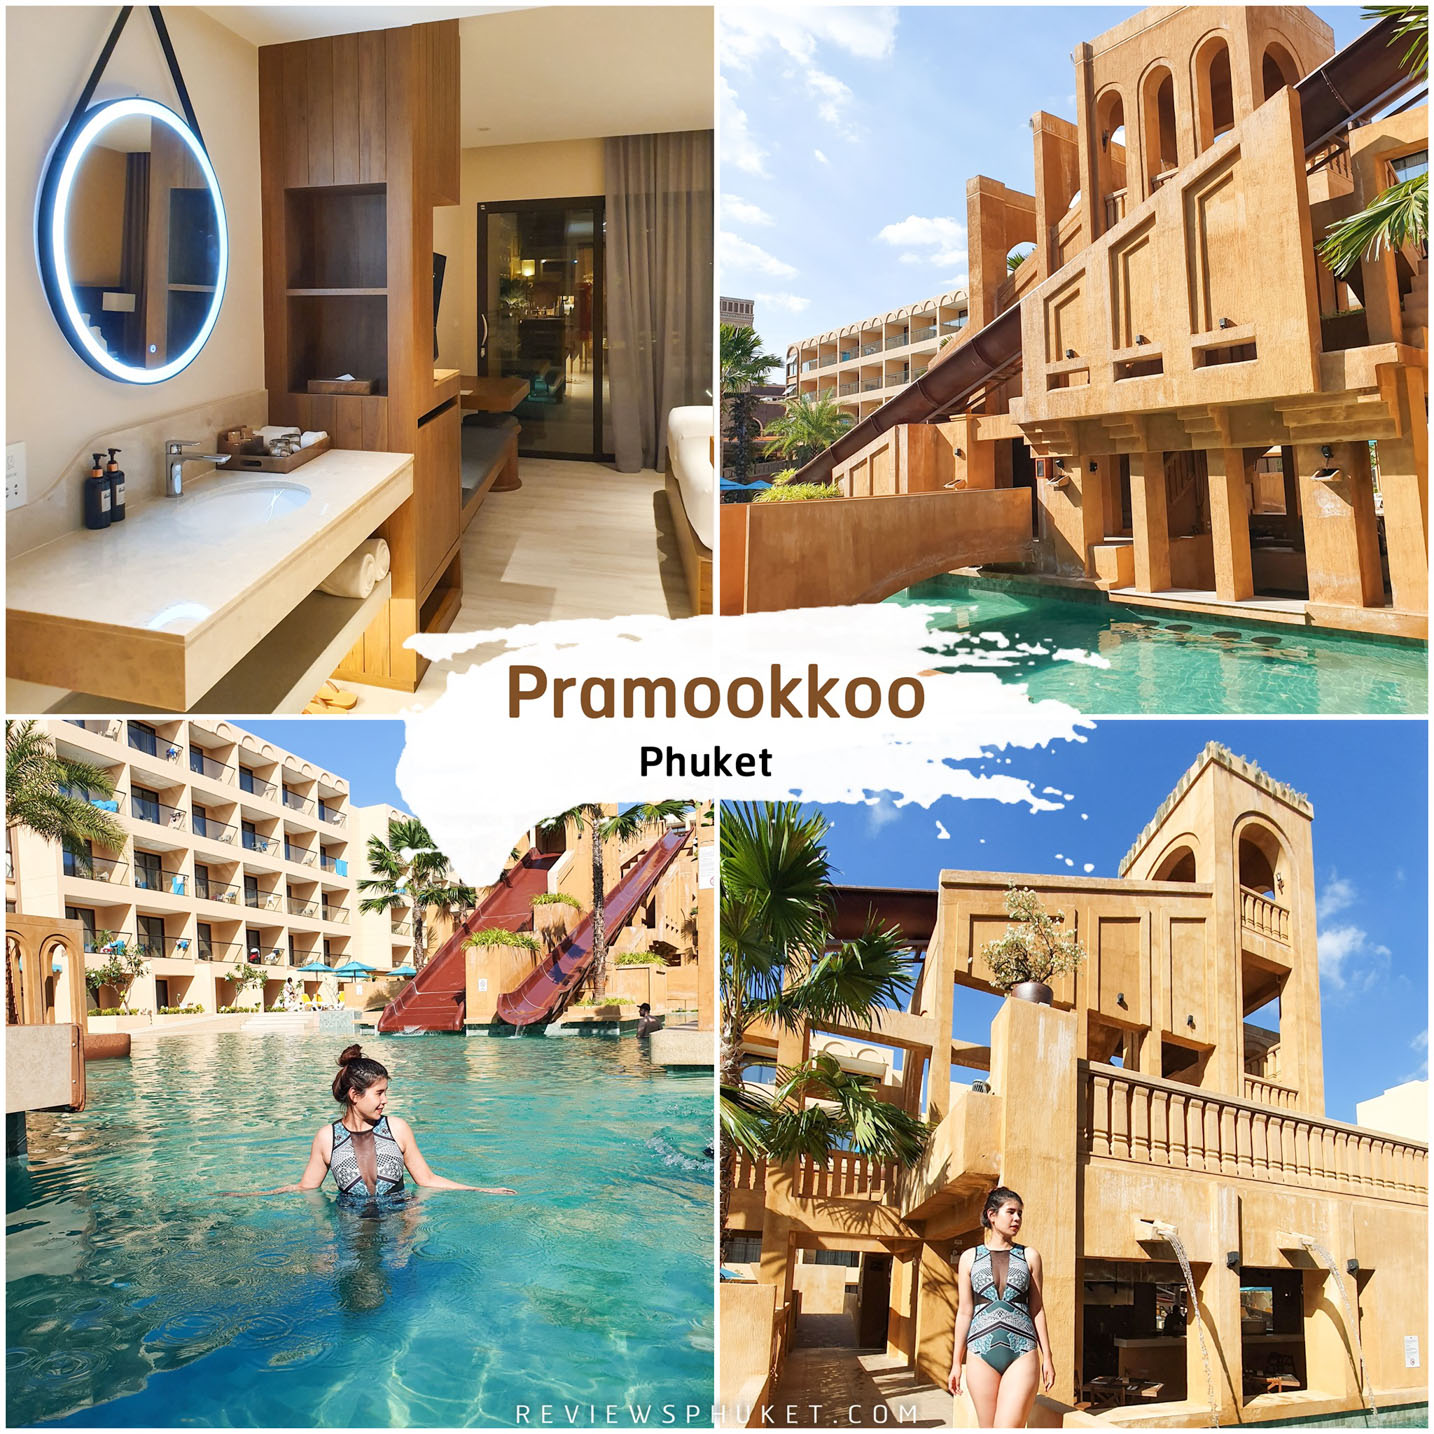 Pramookkoo-Phuket -โรงแรม-ประมุกโก้-รีสอร์ท-รีสอร์ทสุดสวยออกแบบสไตล์เมโสโปเตเมีย-มีสวนน้ำ-สวนสนุกอยู่กลางโรงแรมโดยมีห้องพักล้อมรอบ-ตั้งอยู่บนถนนเลียบหาดกะตะ-มีห้องพักมากถึง-500-ห้อง
 ที่พักภูเก็ต,ที่พักหรู,วิวหลักล้าน,ริมทะเล,โรงแรม,รีสอร์ท,Phuket,หาดสวย,น้ำใส